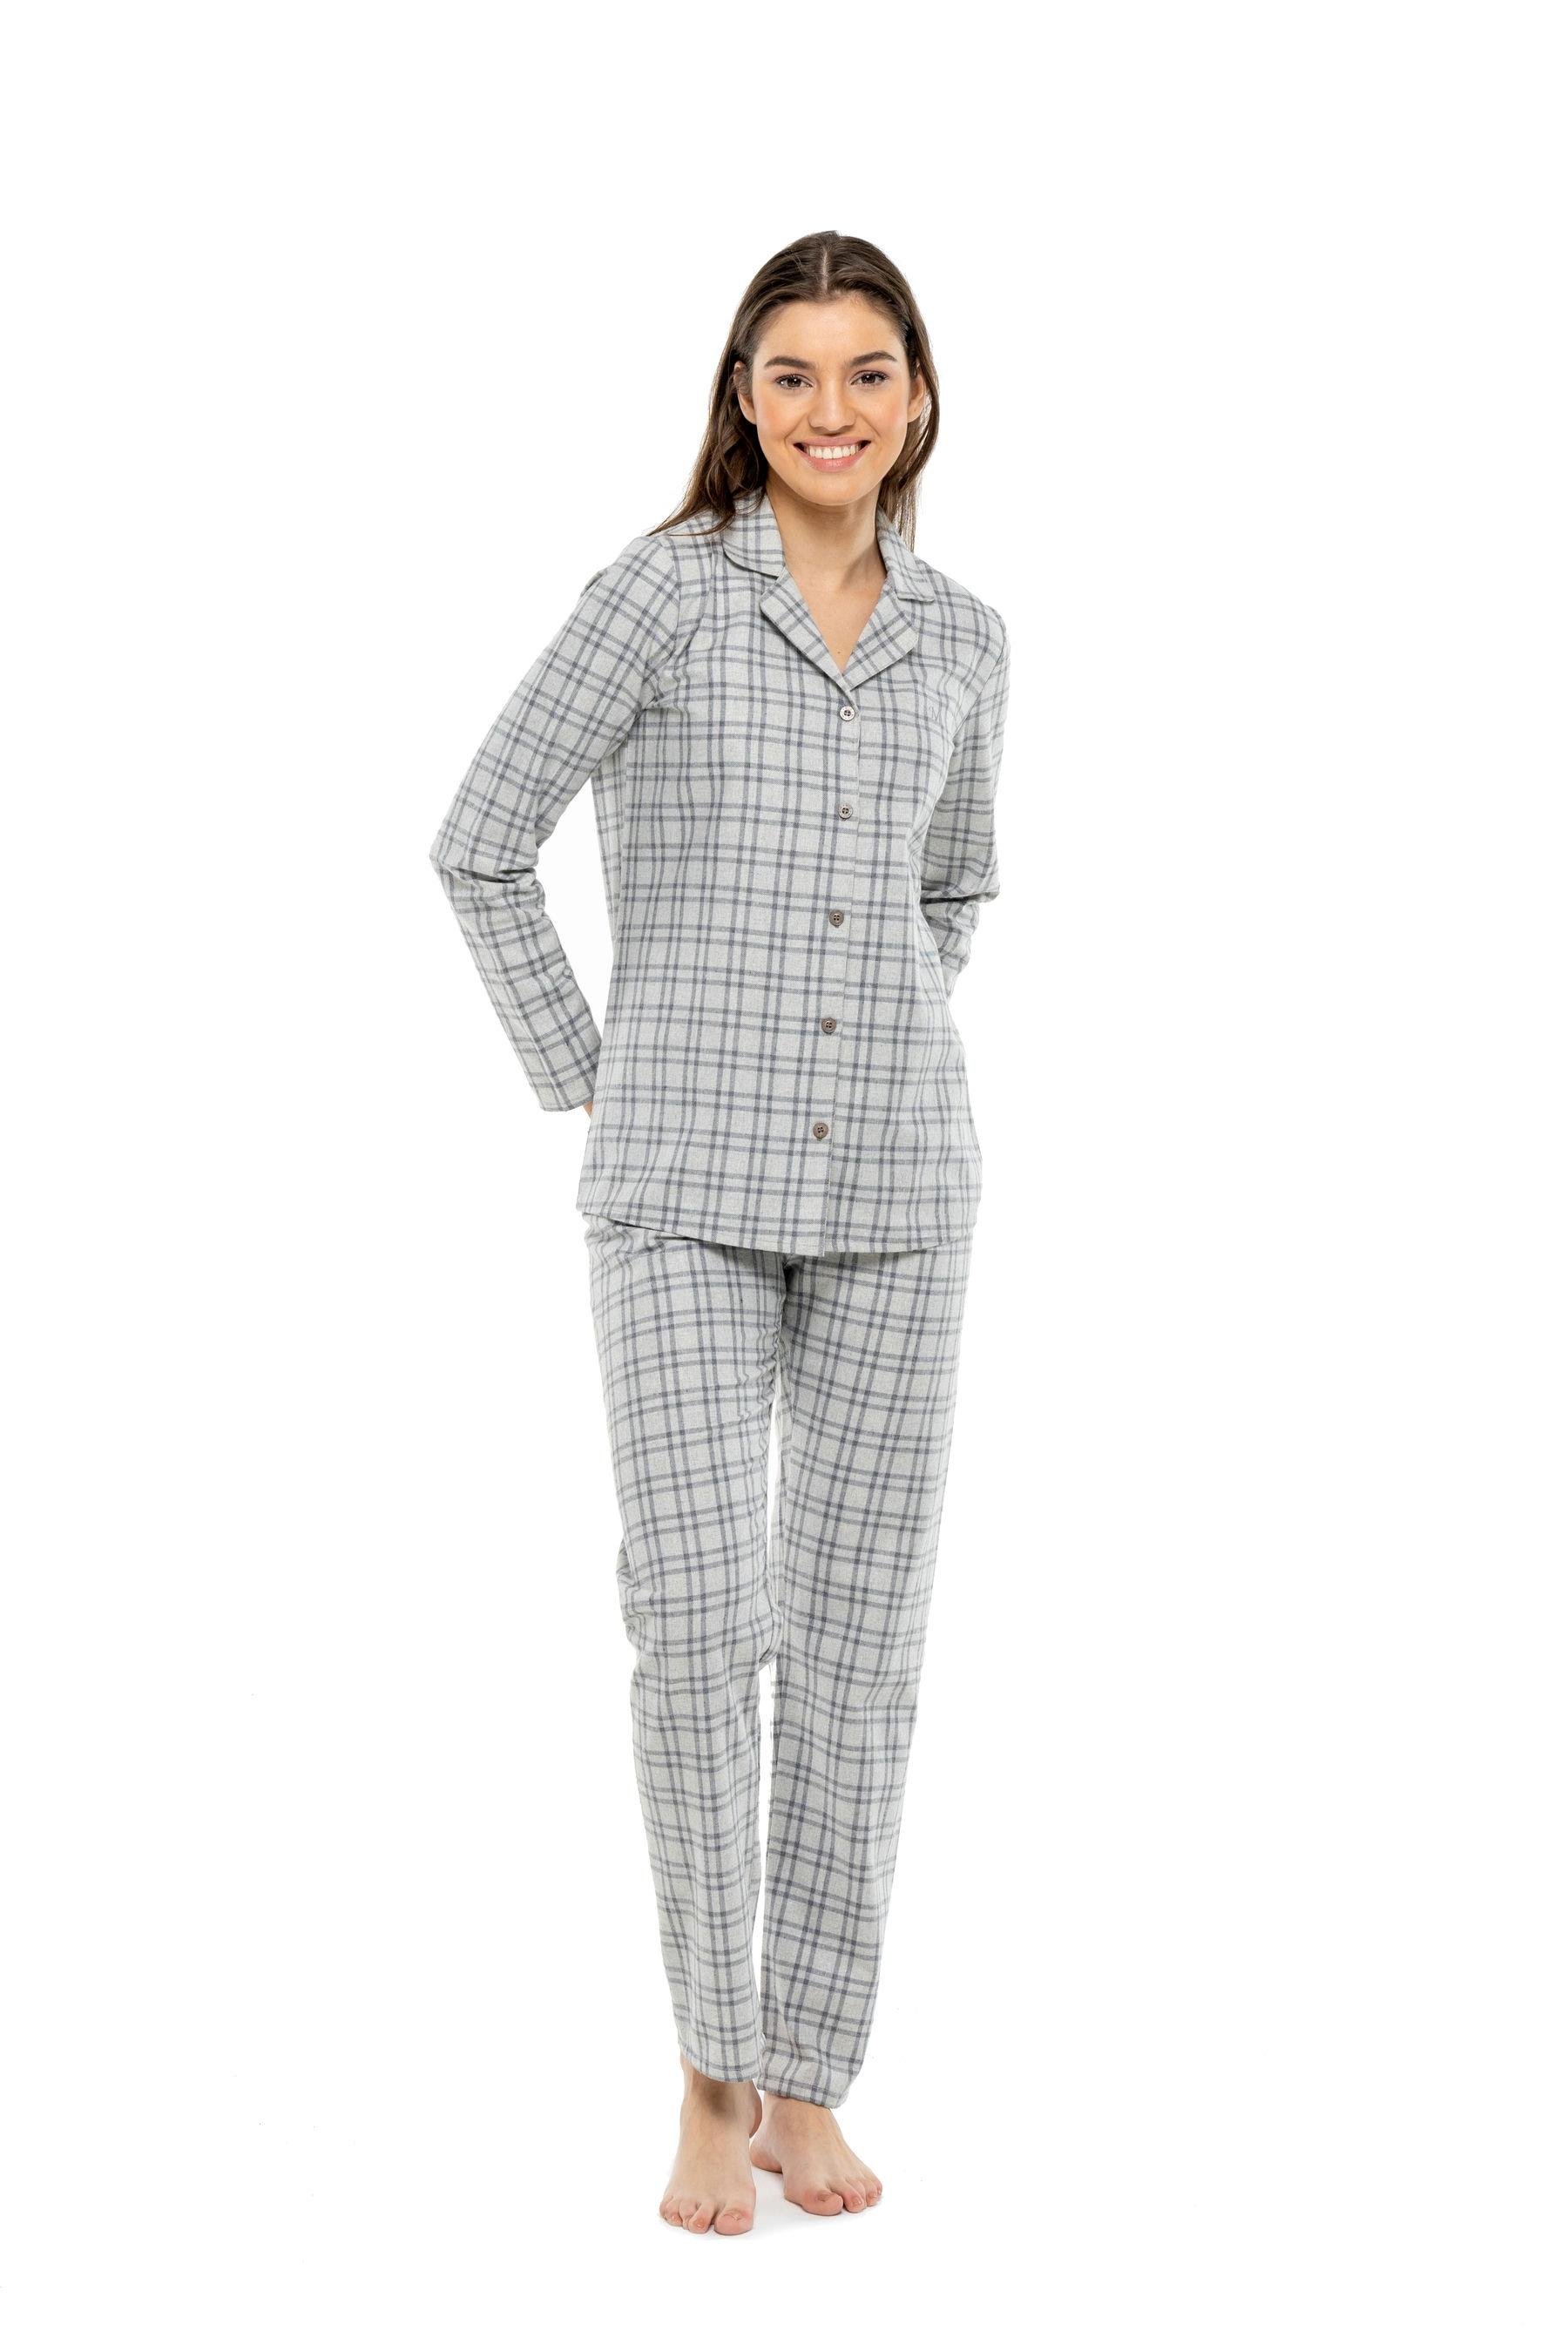 Mod Collection - Kadın Antrasit Boydan Patlı Pijama Takımı |  Modcollection.com.tr